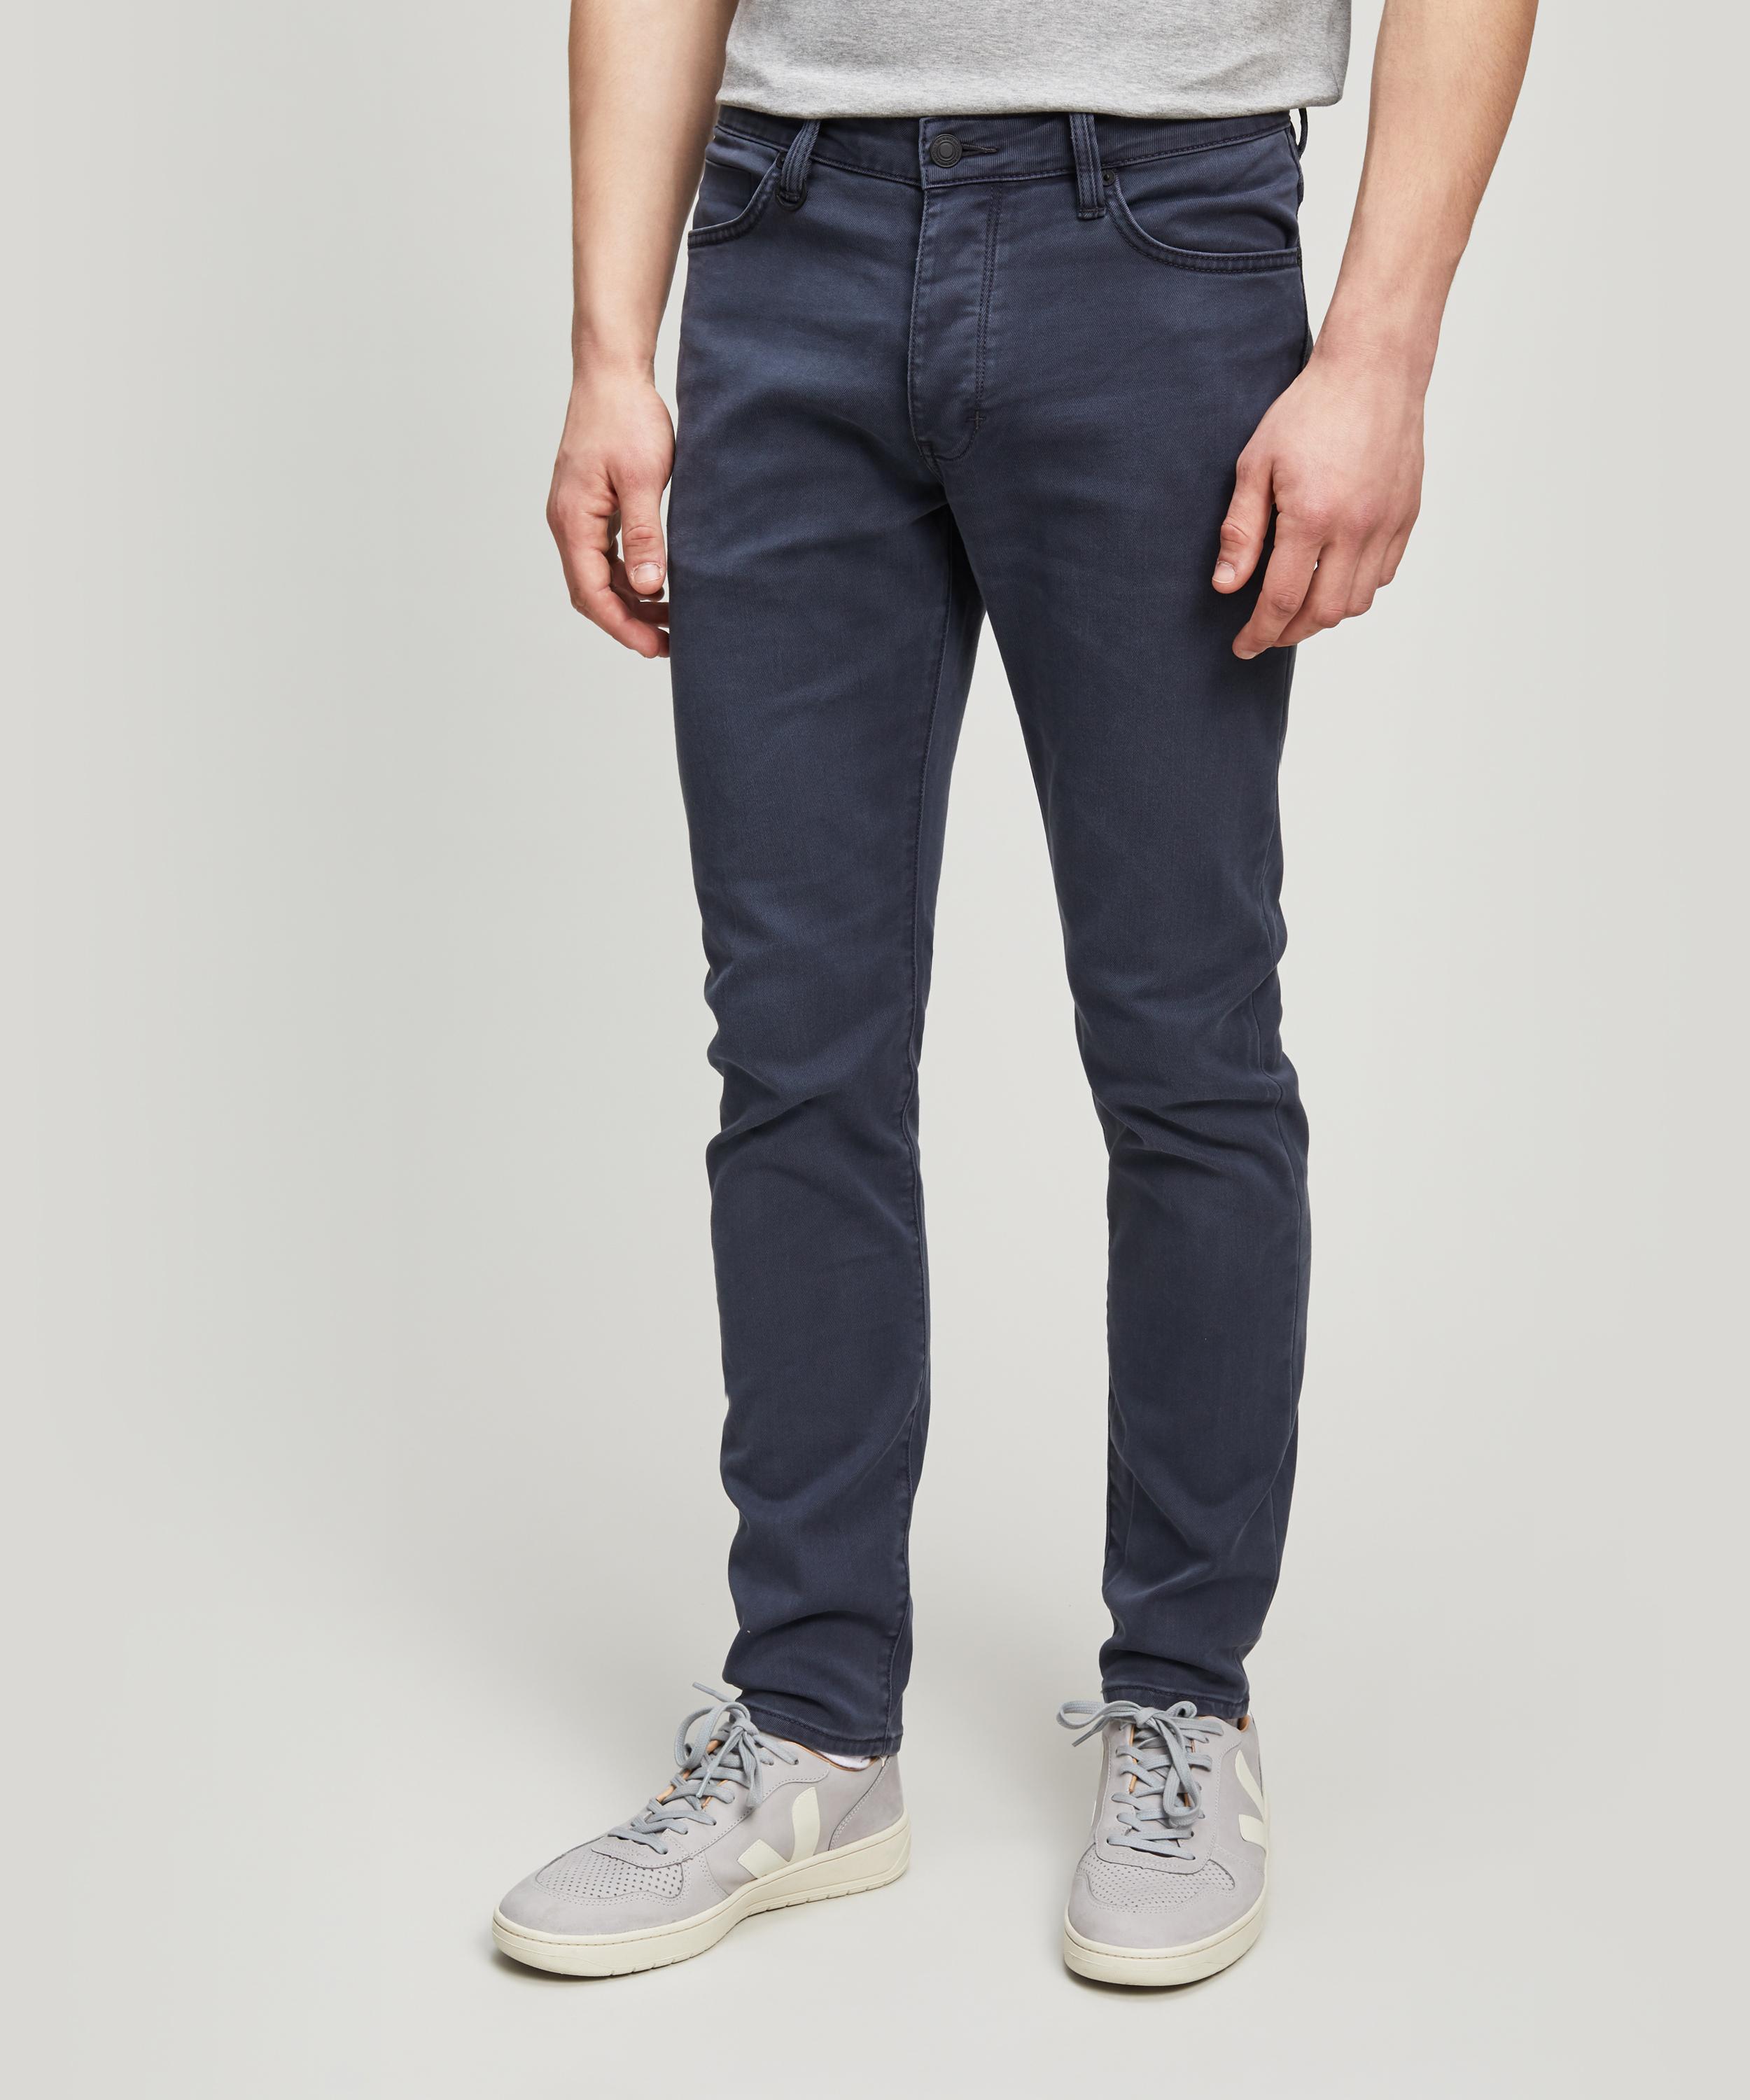 Neuw Denim Lou Slim Liberte Jeans in Denim (Blue) for Men - Lyst